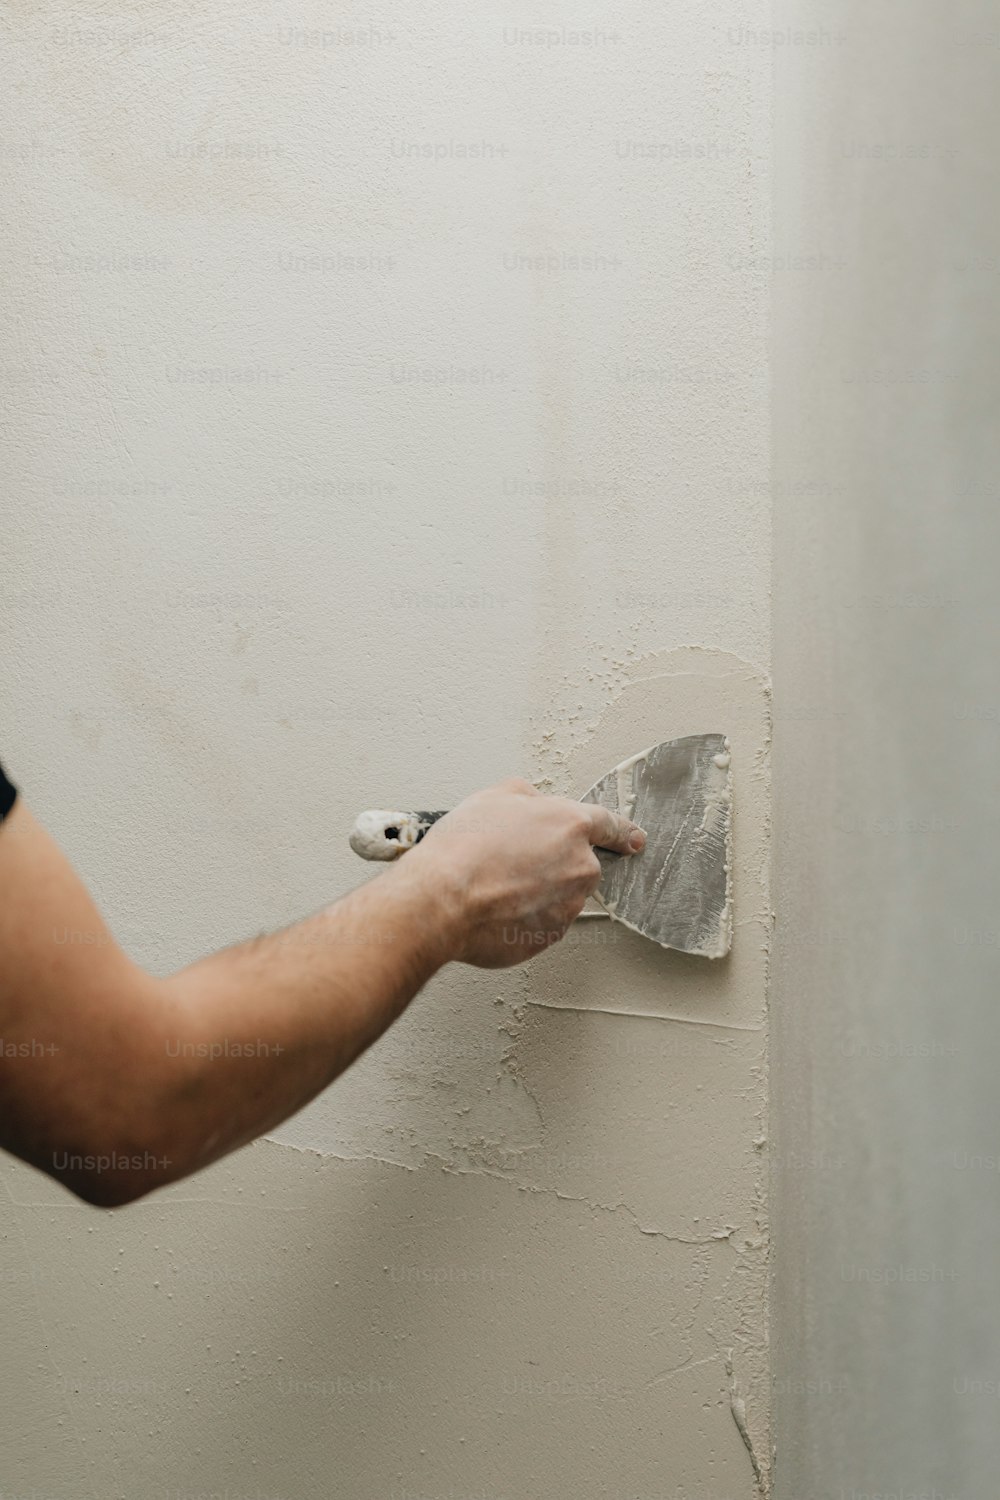 eine Person, die einen Farbroller benutzt, um eine Wand zu streichen